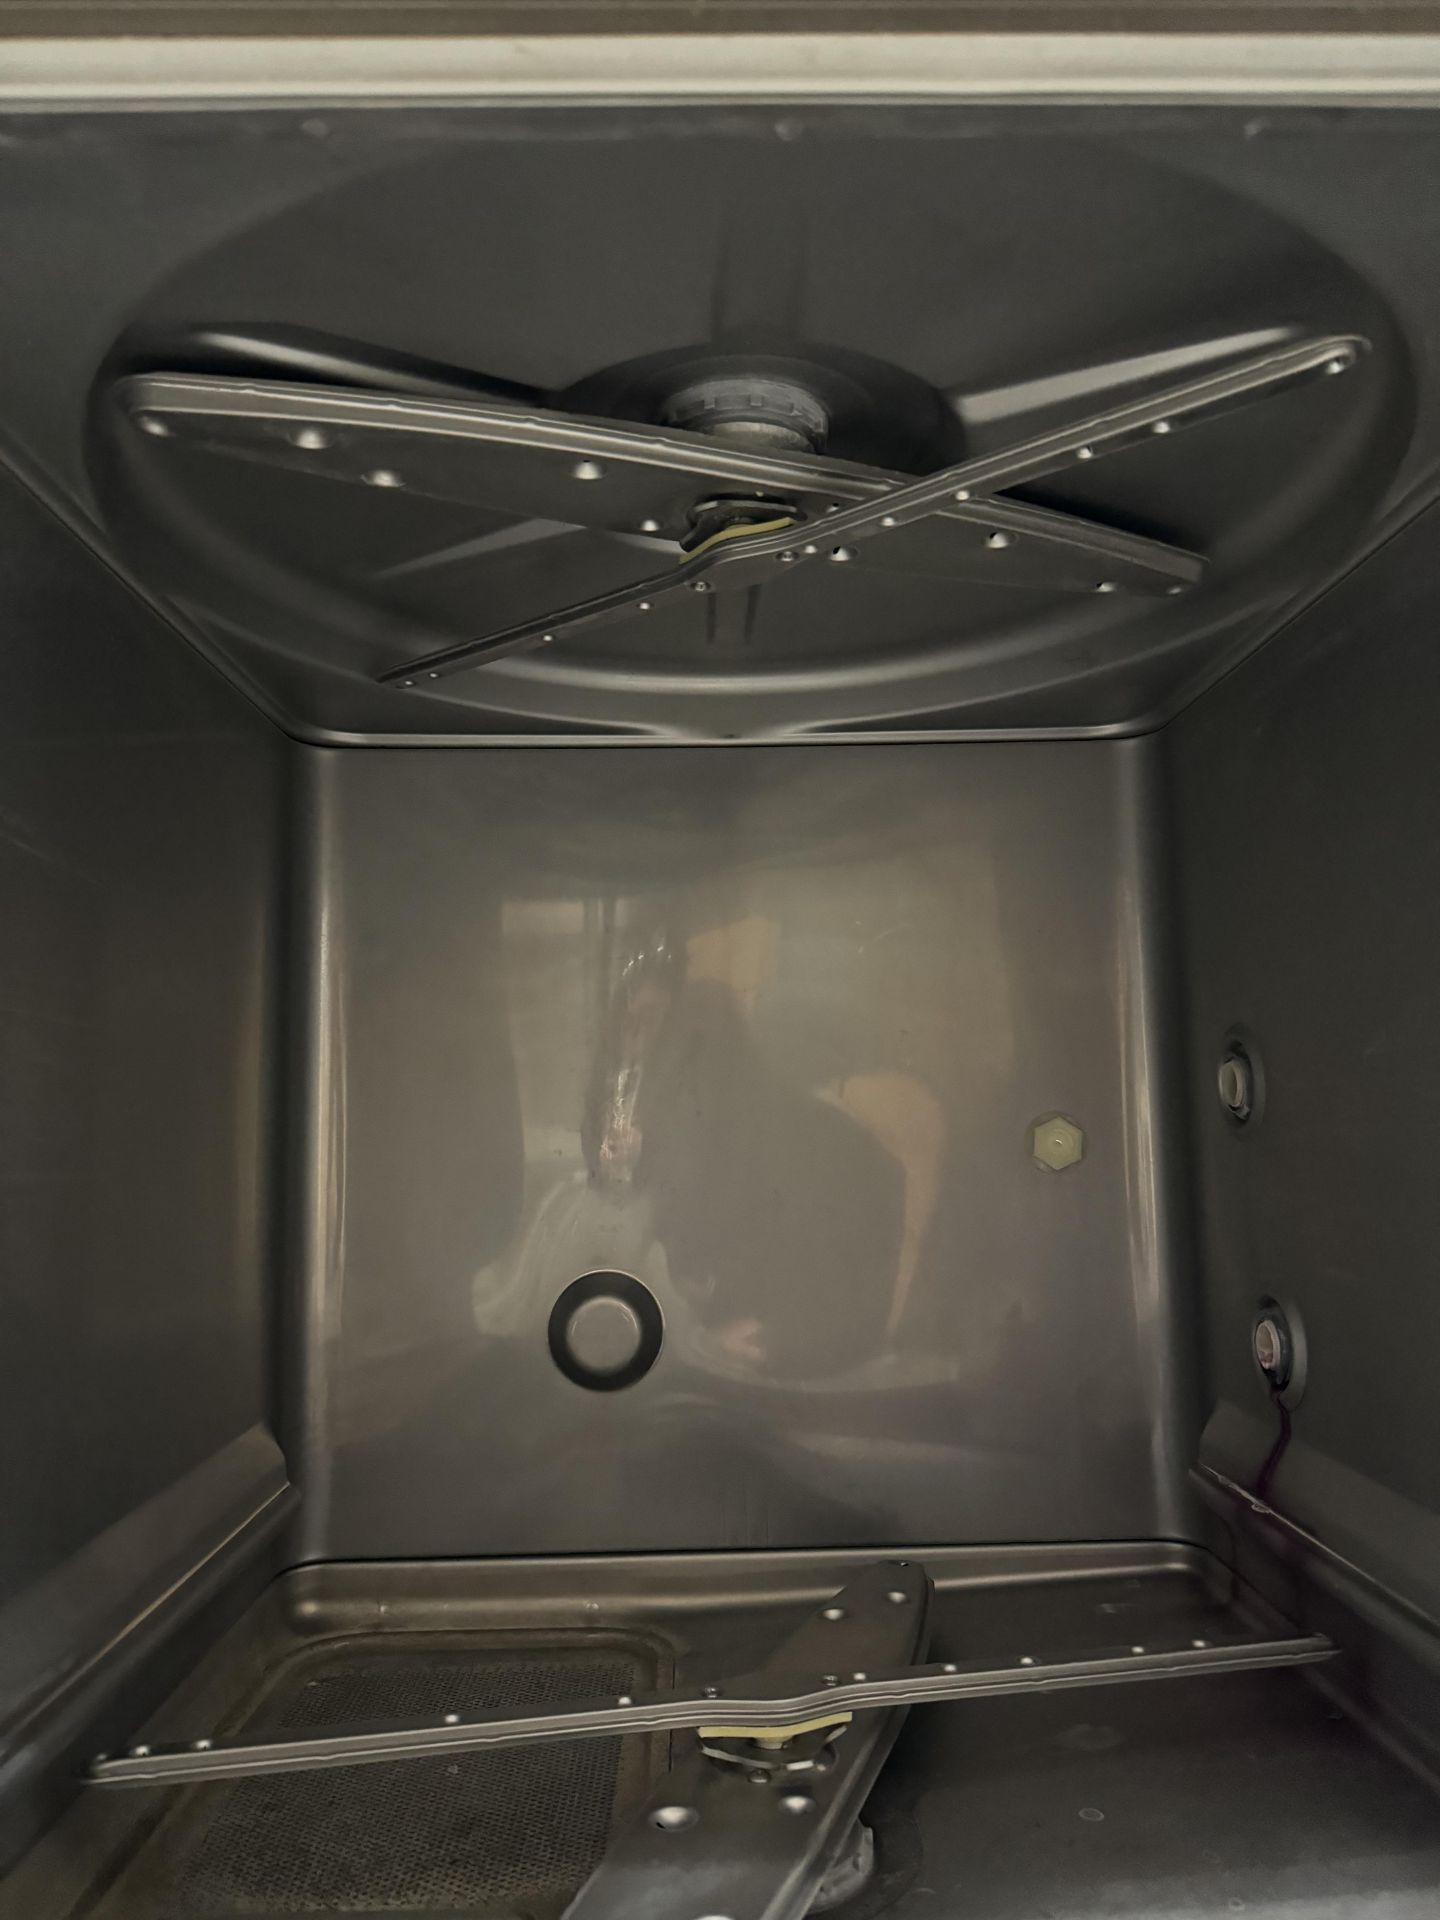 Hobart Under Counter Dishwasher Model LXEH-2 - Image 4 of 11